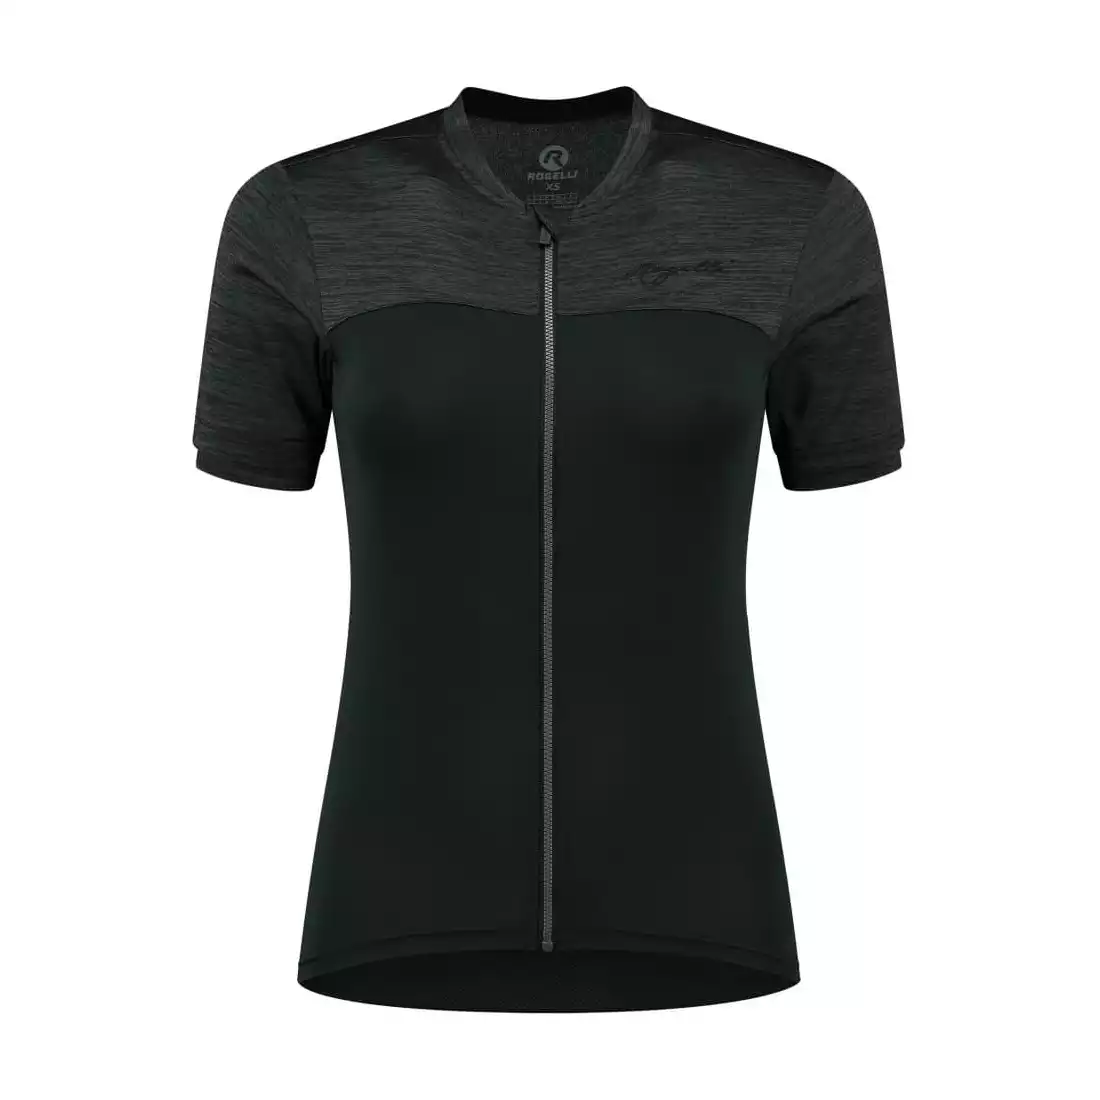 Rogelli MELANGE women's cycling jersey, black